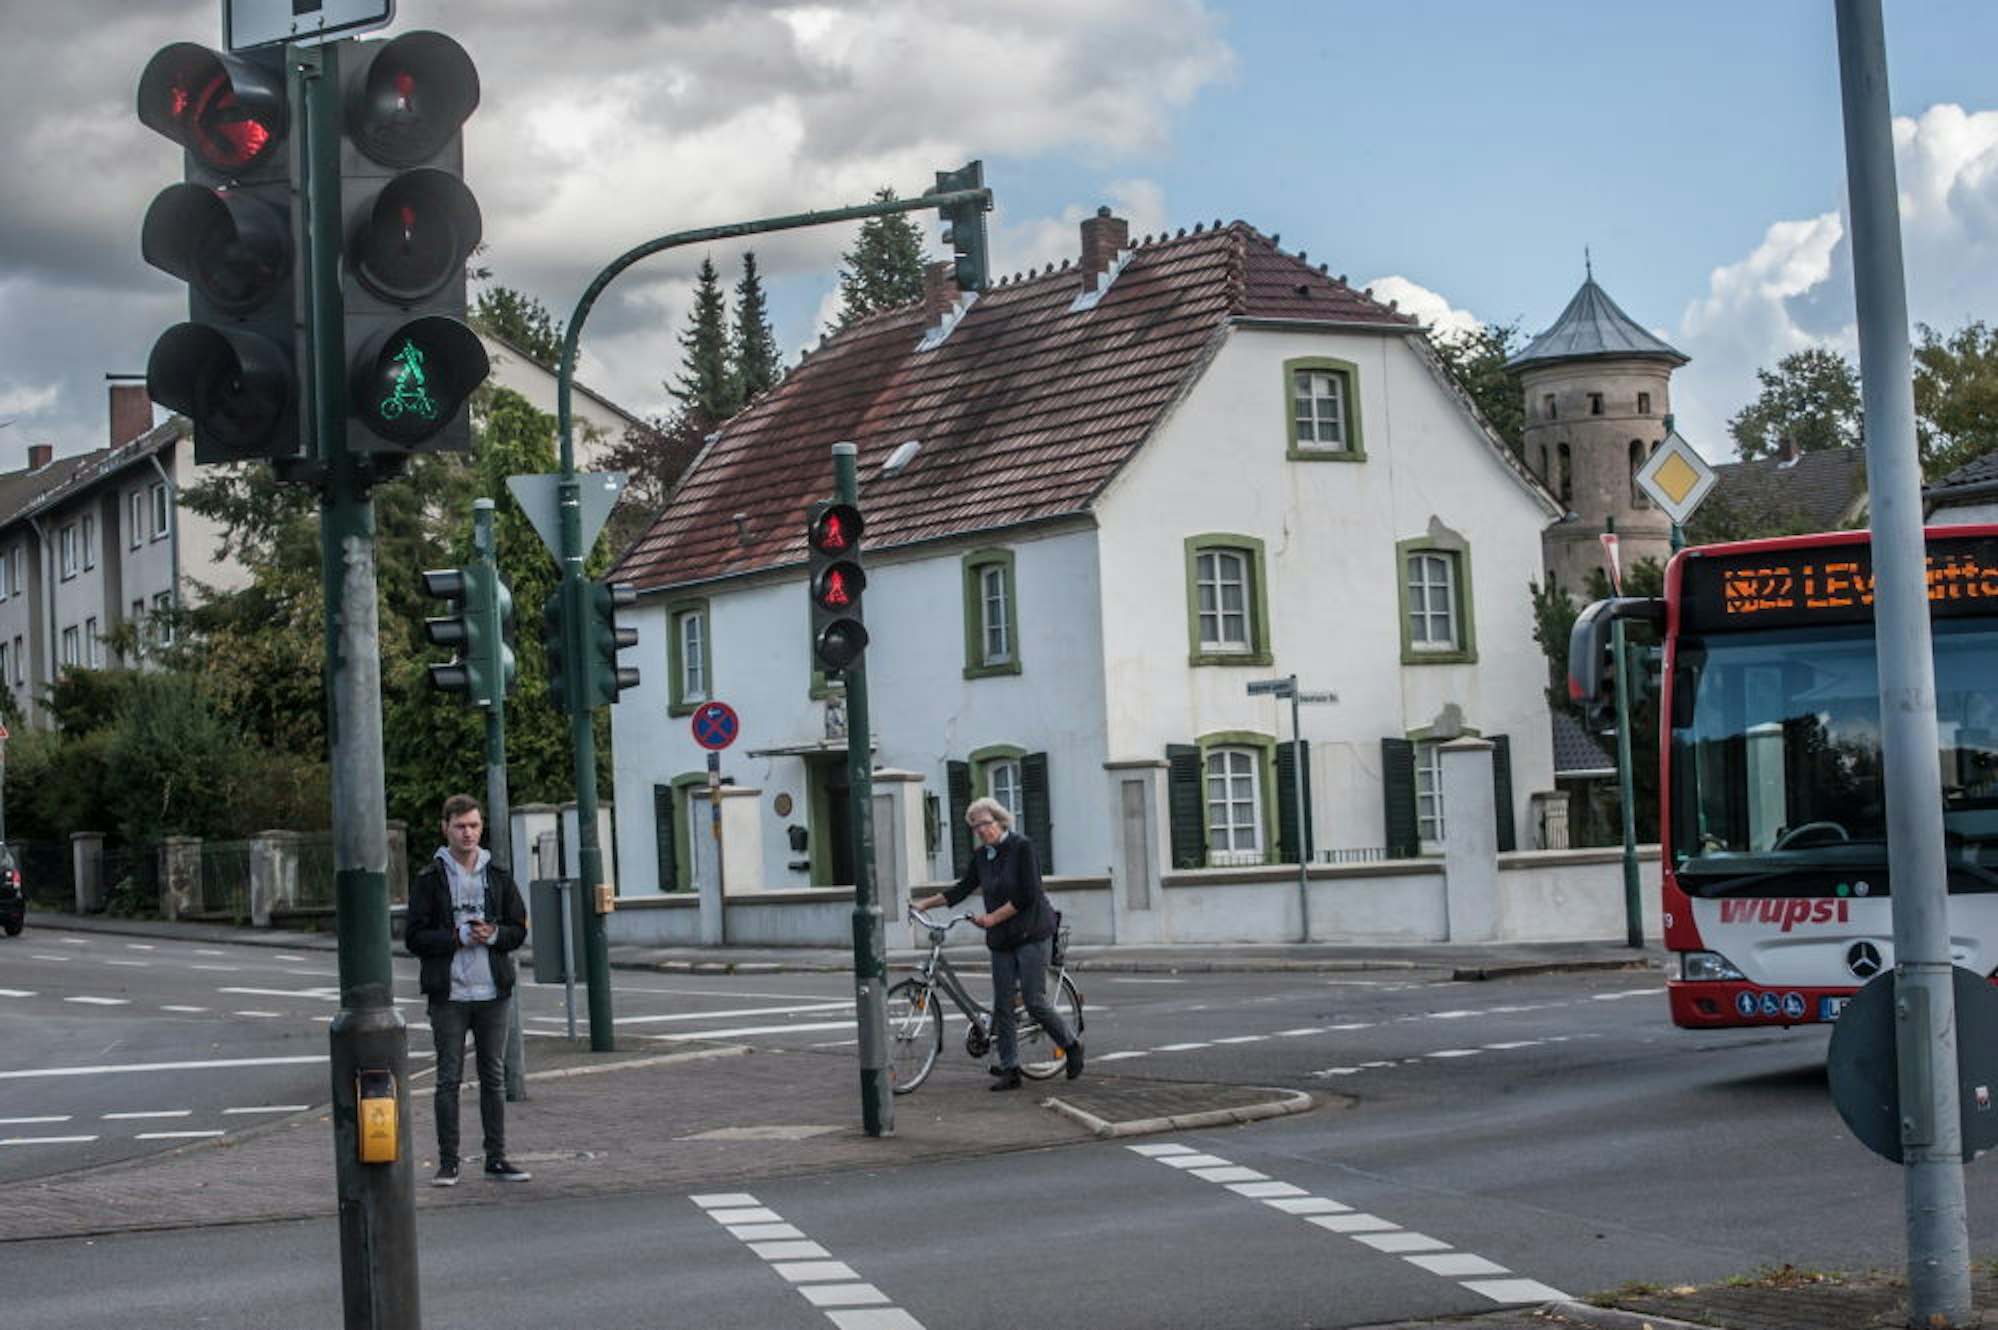 Fußgänger, Radfahrer, Busgäste – bei der Planung für den Bereich Schlebusch Post sollen alle Verkehrsteilnehmer bedacht werden.